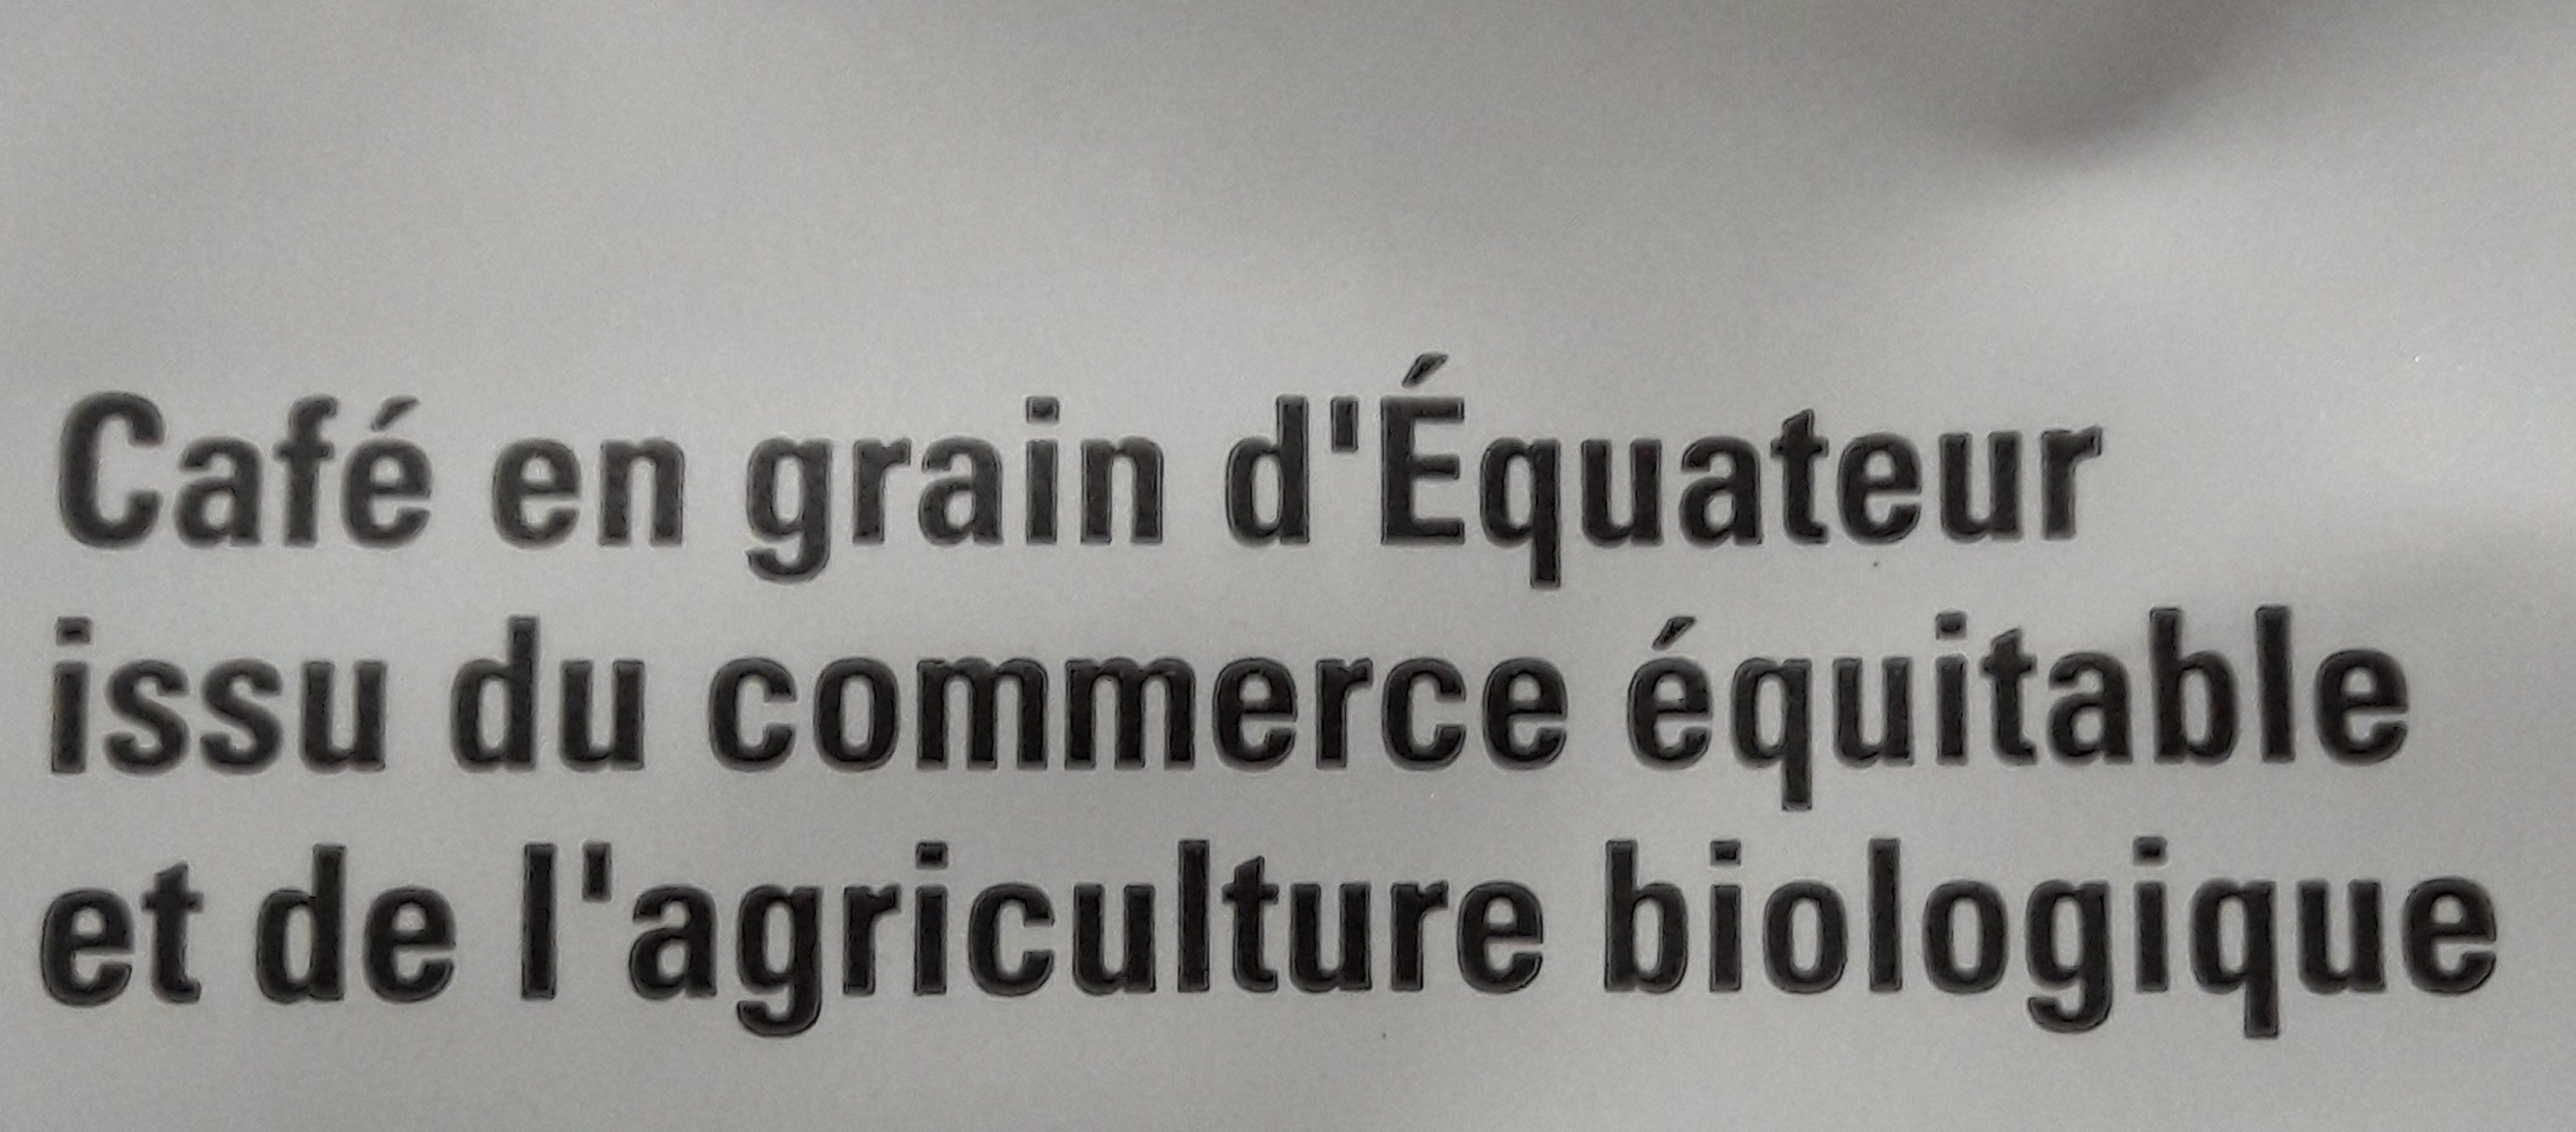 Café équateur Grains Bio & équitable - Ingredients - fr